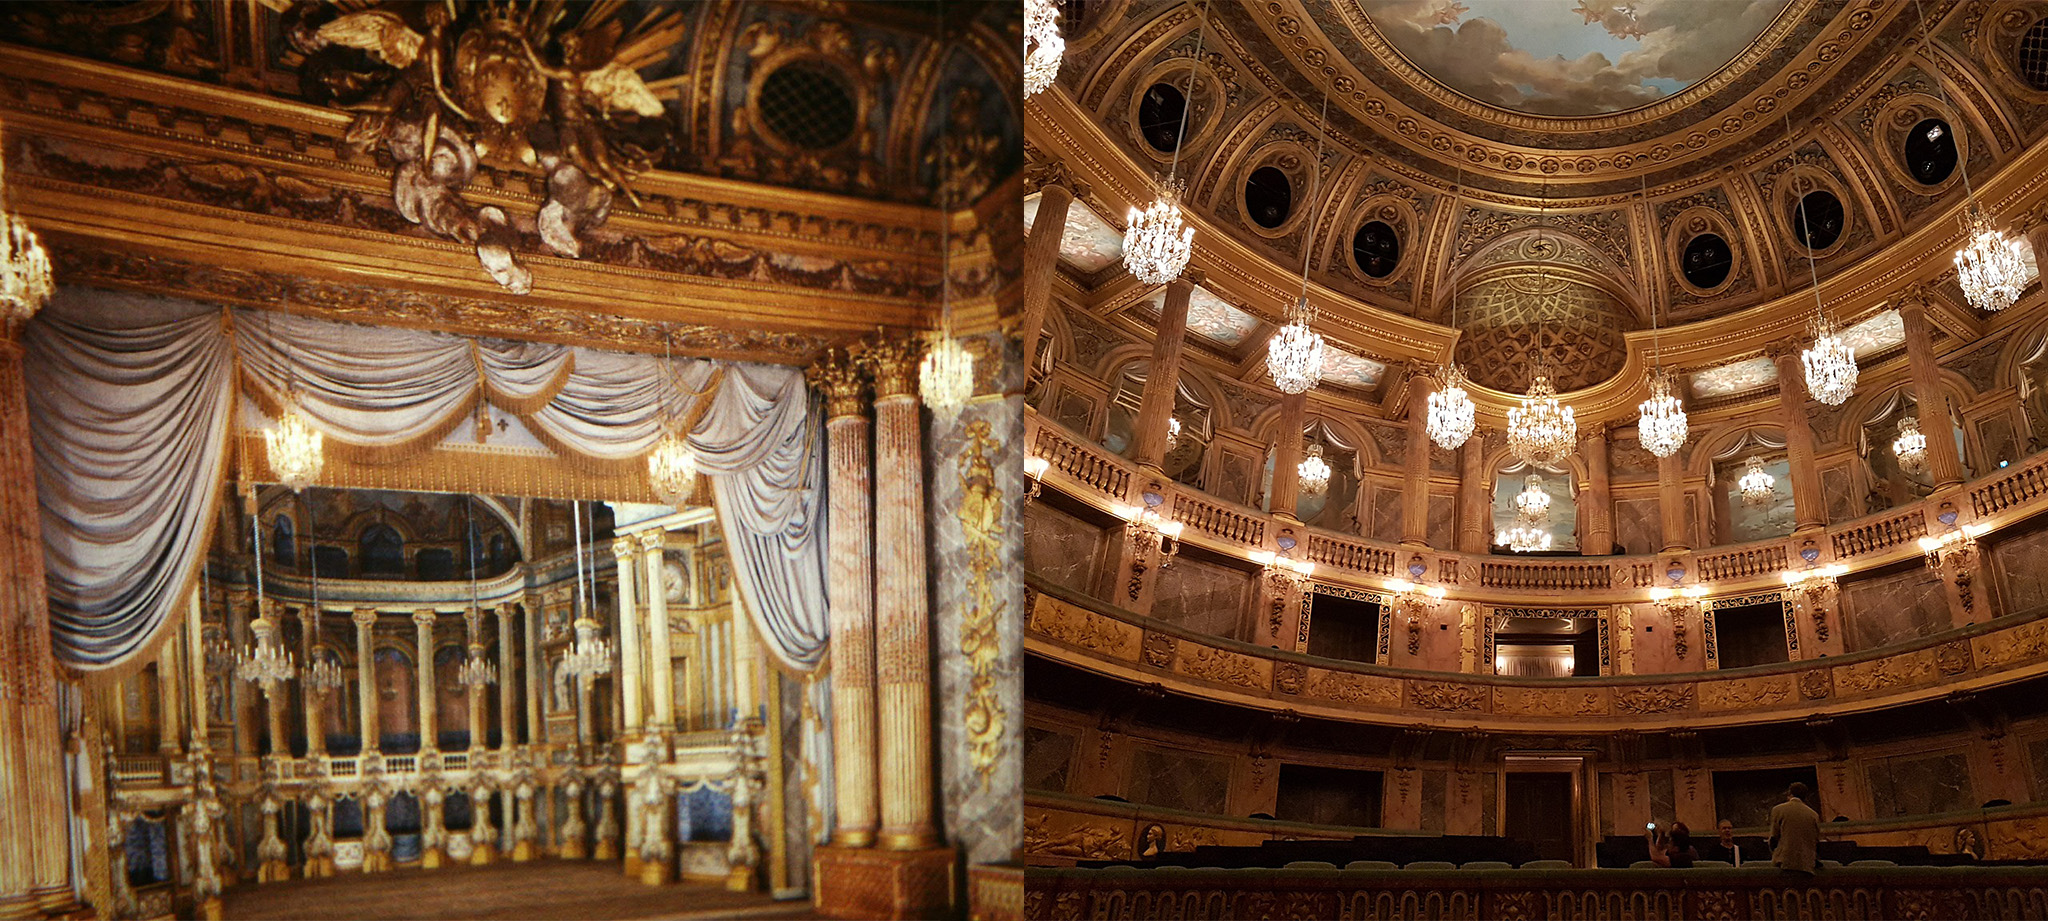 photos of the opera royal de versailles and the opera royal de versailles concert hall